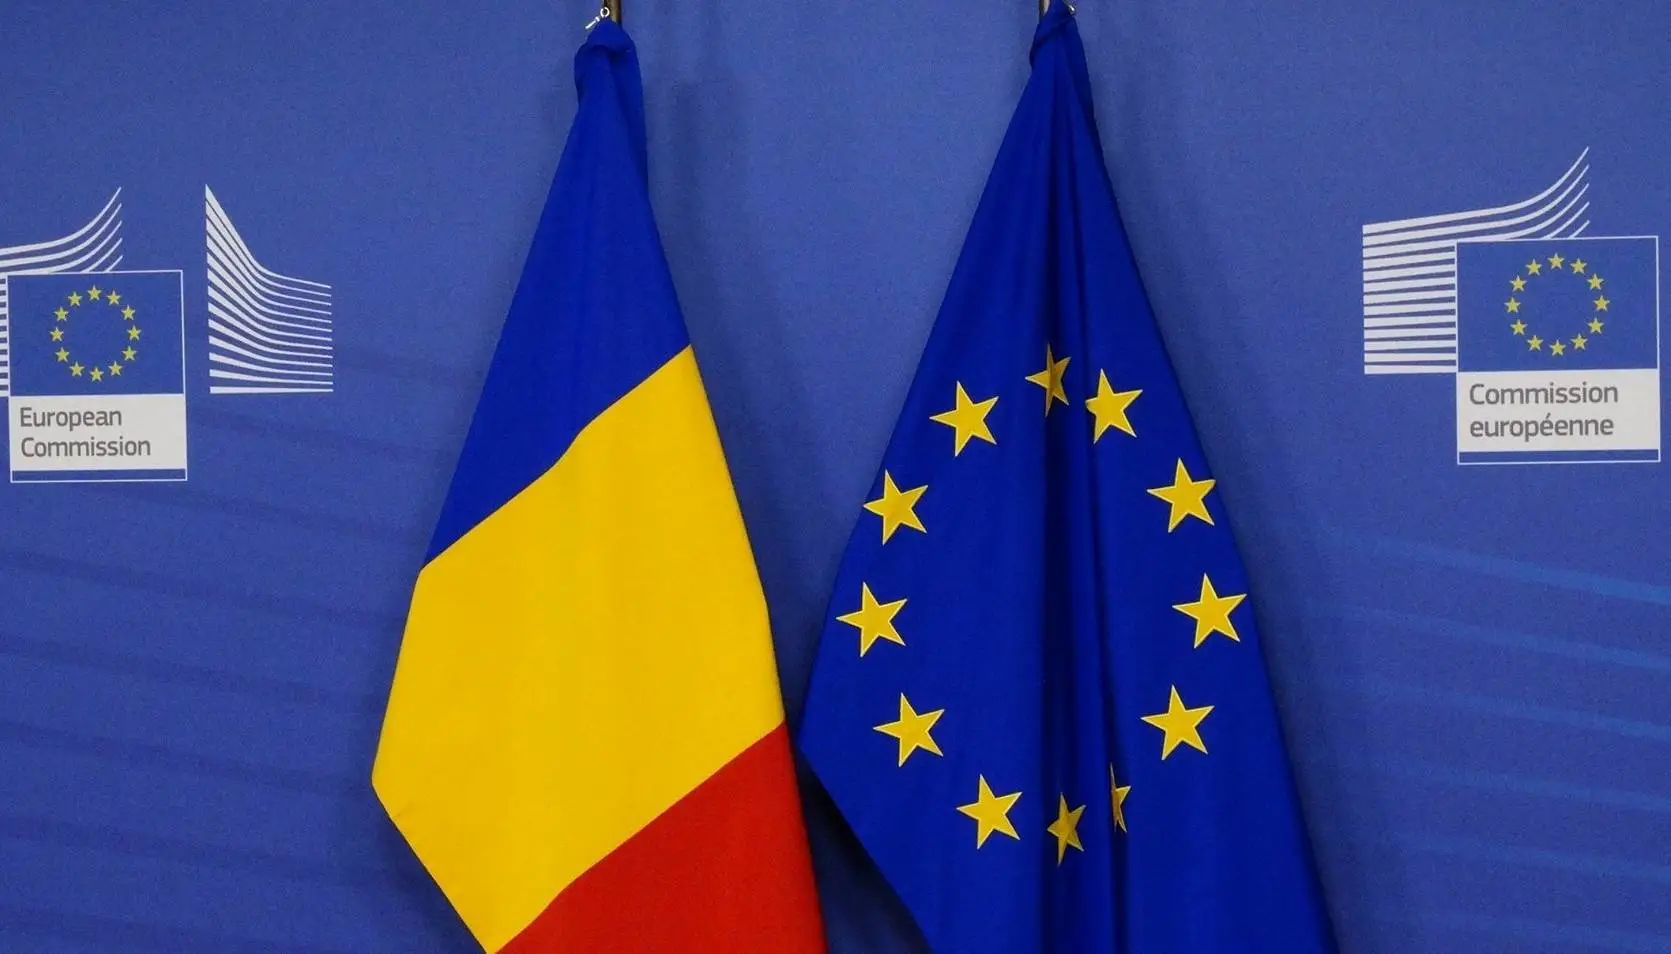 Anuntul Comisiei Europene, Suma de Bani Aprobata pentru Romania